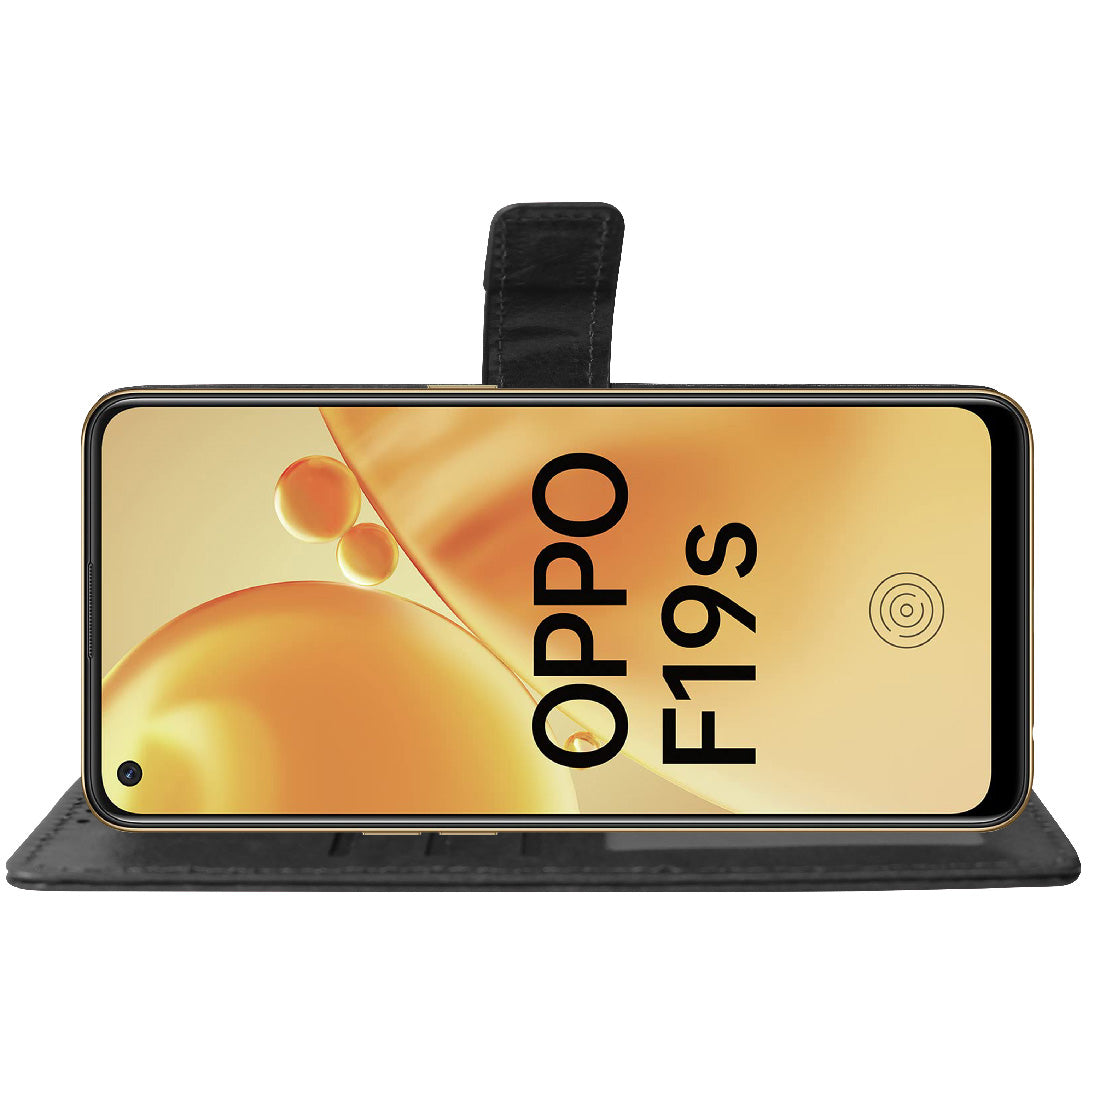 Premium Wallet Flip Cover for Oppo F19s